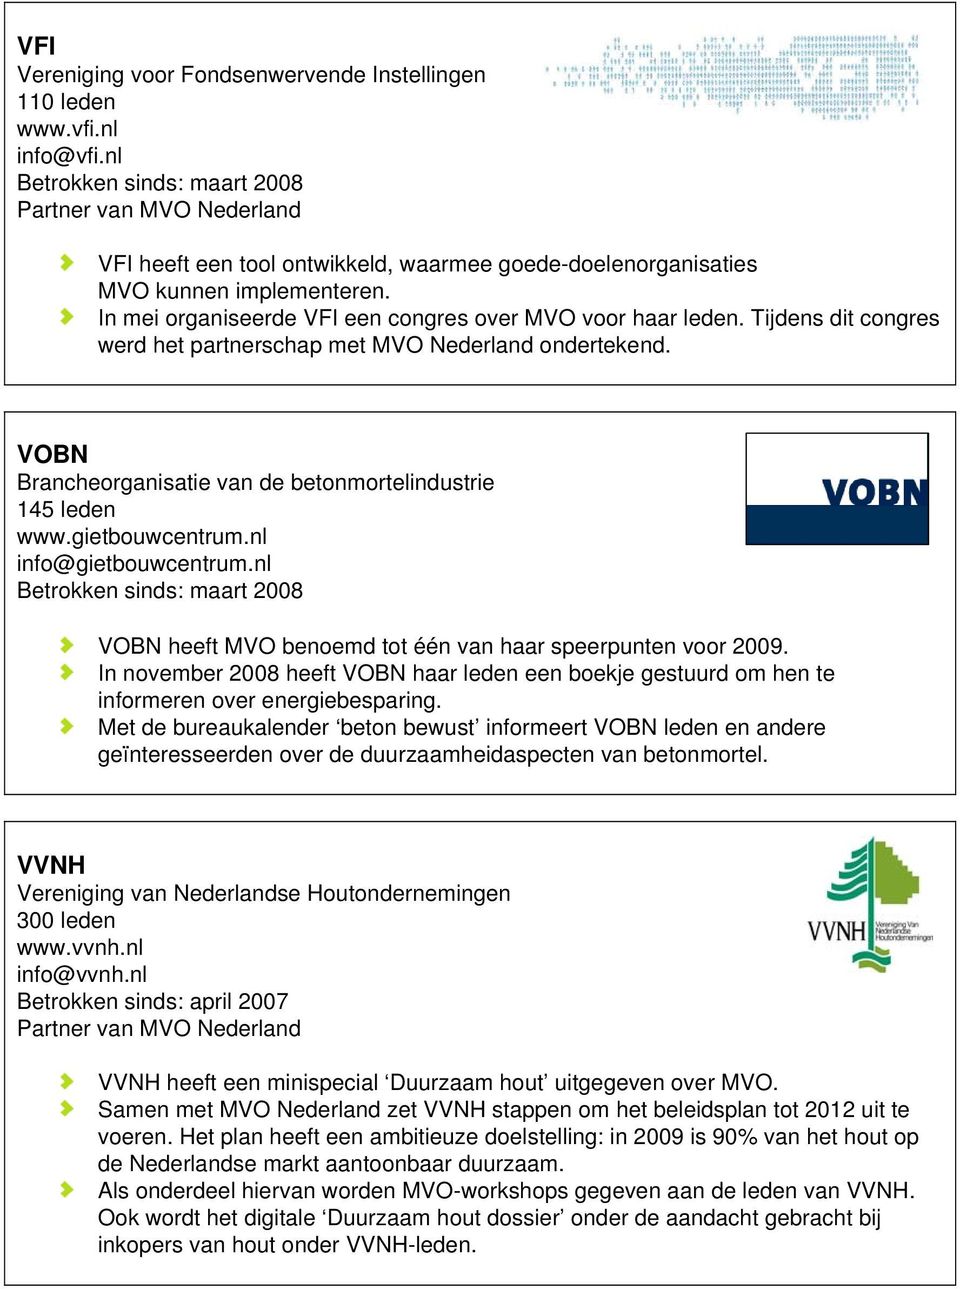 VOBN Brancheorganisatie van de betonmortelindustrie 145 leden www.gietbouwcentrum.nl info@gietbouwcentrum.nl Betrokken sinds: maart 2008 VOBN heeft MVO benoemd tot één van haar speerpunten voor 2009.